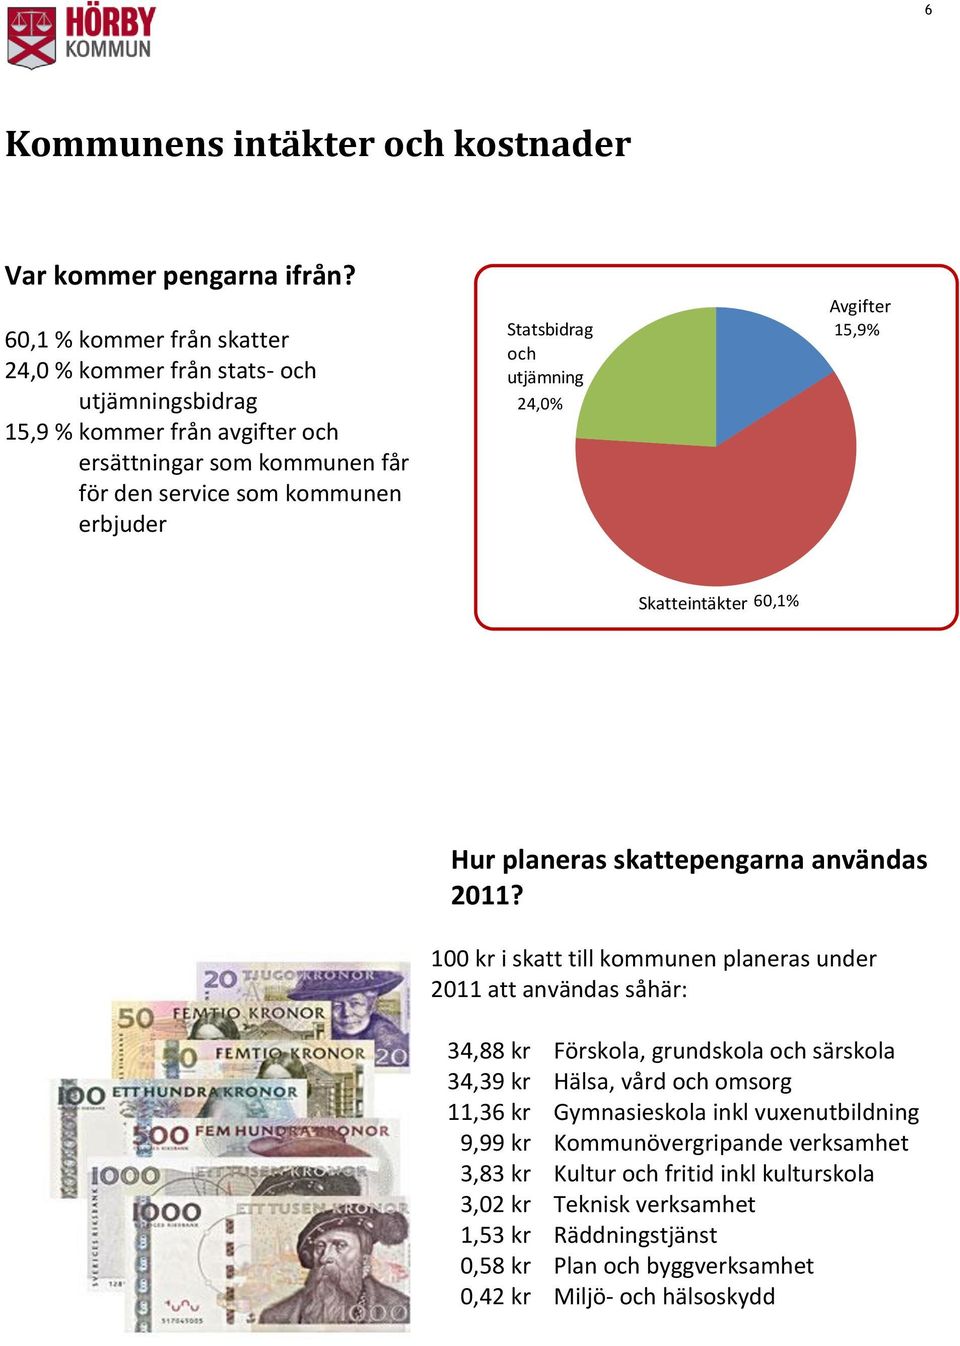 Statsbidrag och utjämning 24,0% Avgifter 15,9% Skatteintäkter 60,1% Hur planeras skattepengarna användas 2011?